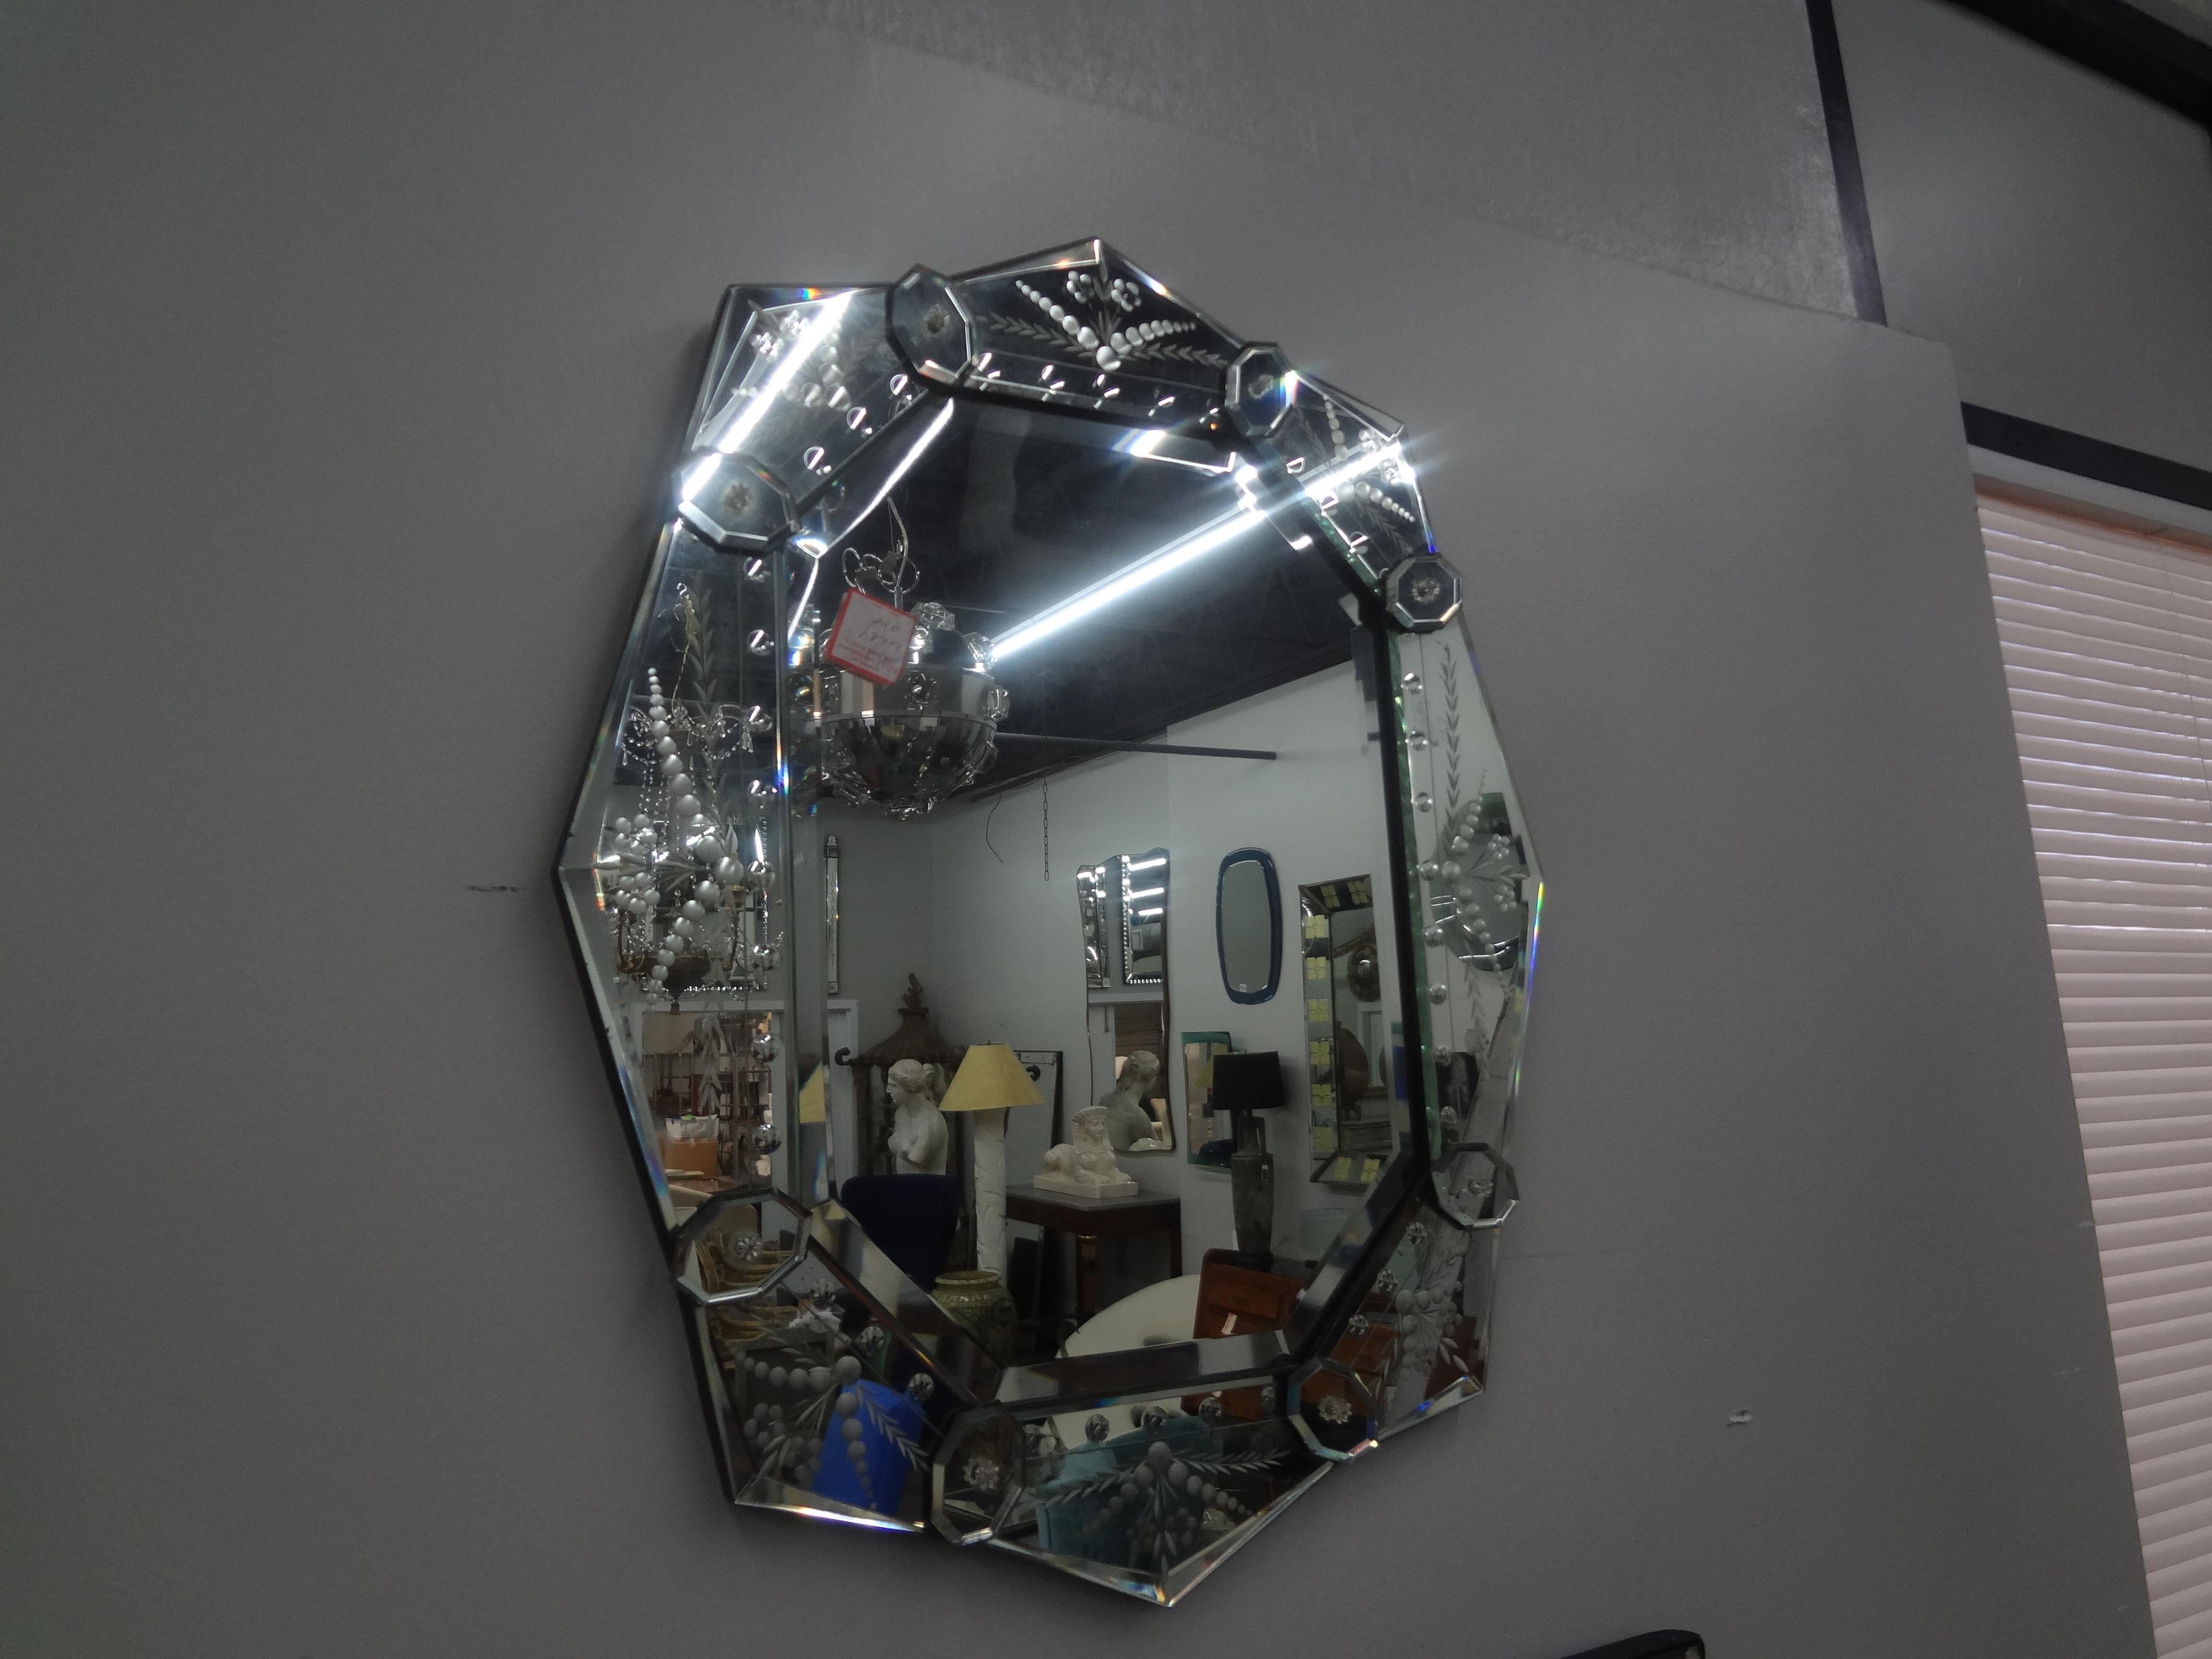 Vintage Geätzte und abgeschrägte venezianischen Spiegel.
Dieser ungewöhnlich geformte venezianische Spiegel hat einen abgeschrägten Rand und eine abgeschrägte zentrale Spiegelfläche.
Perfekter Spiegel für ein Puderzimmer oder einen Ankleideraum.
